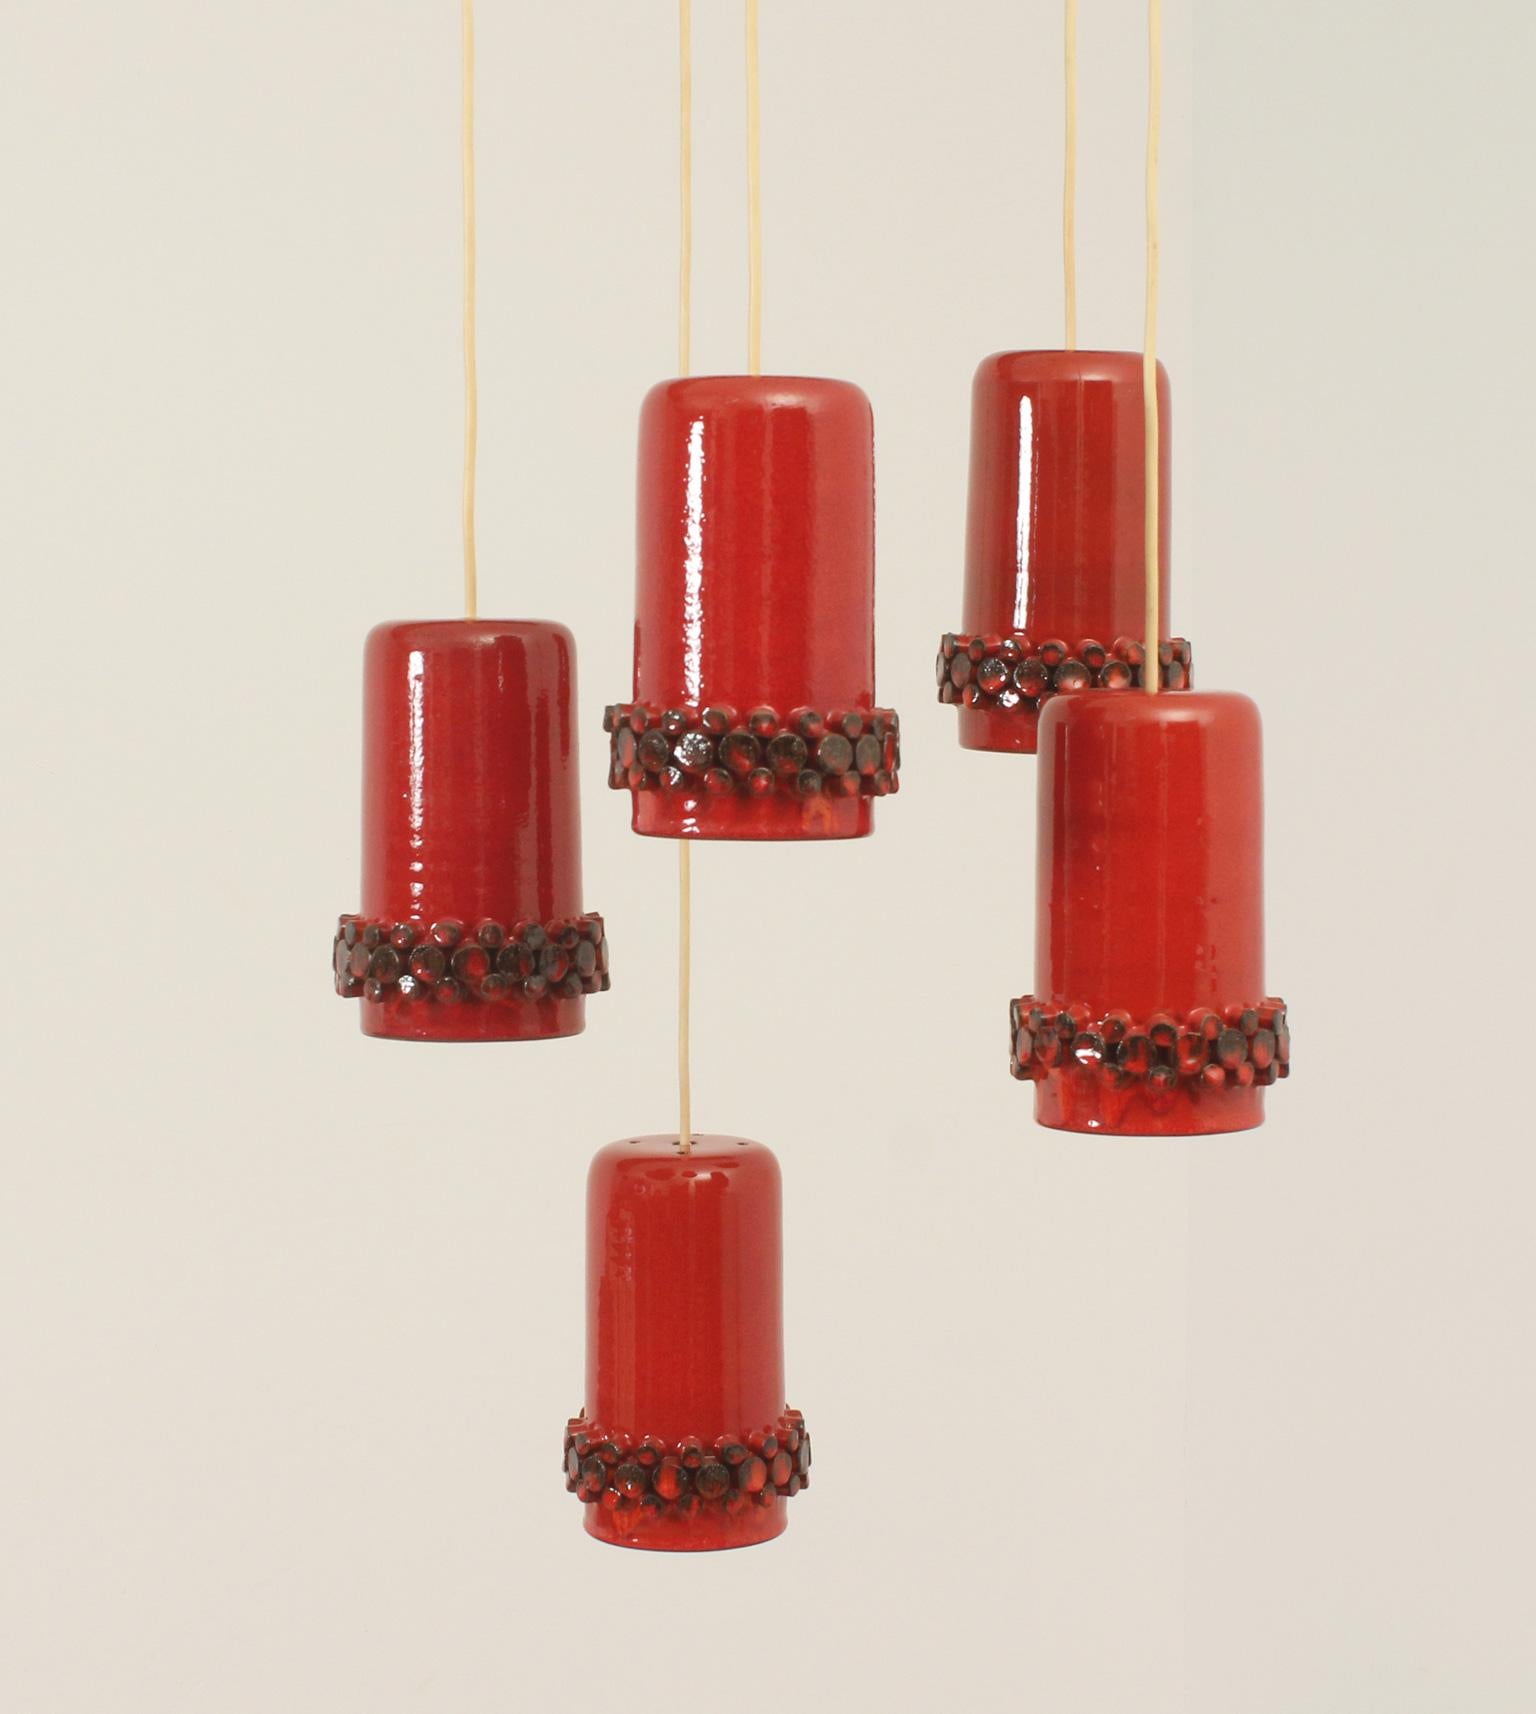 Kaskadenförmige Pendelleuchte für die Ceralux-Serie, entworfen in den 1960er Jahren von Hans Welling für Ceramano, Deutschland. Bestehend aus fünf Lampen aus rot glasierter Keramik. 